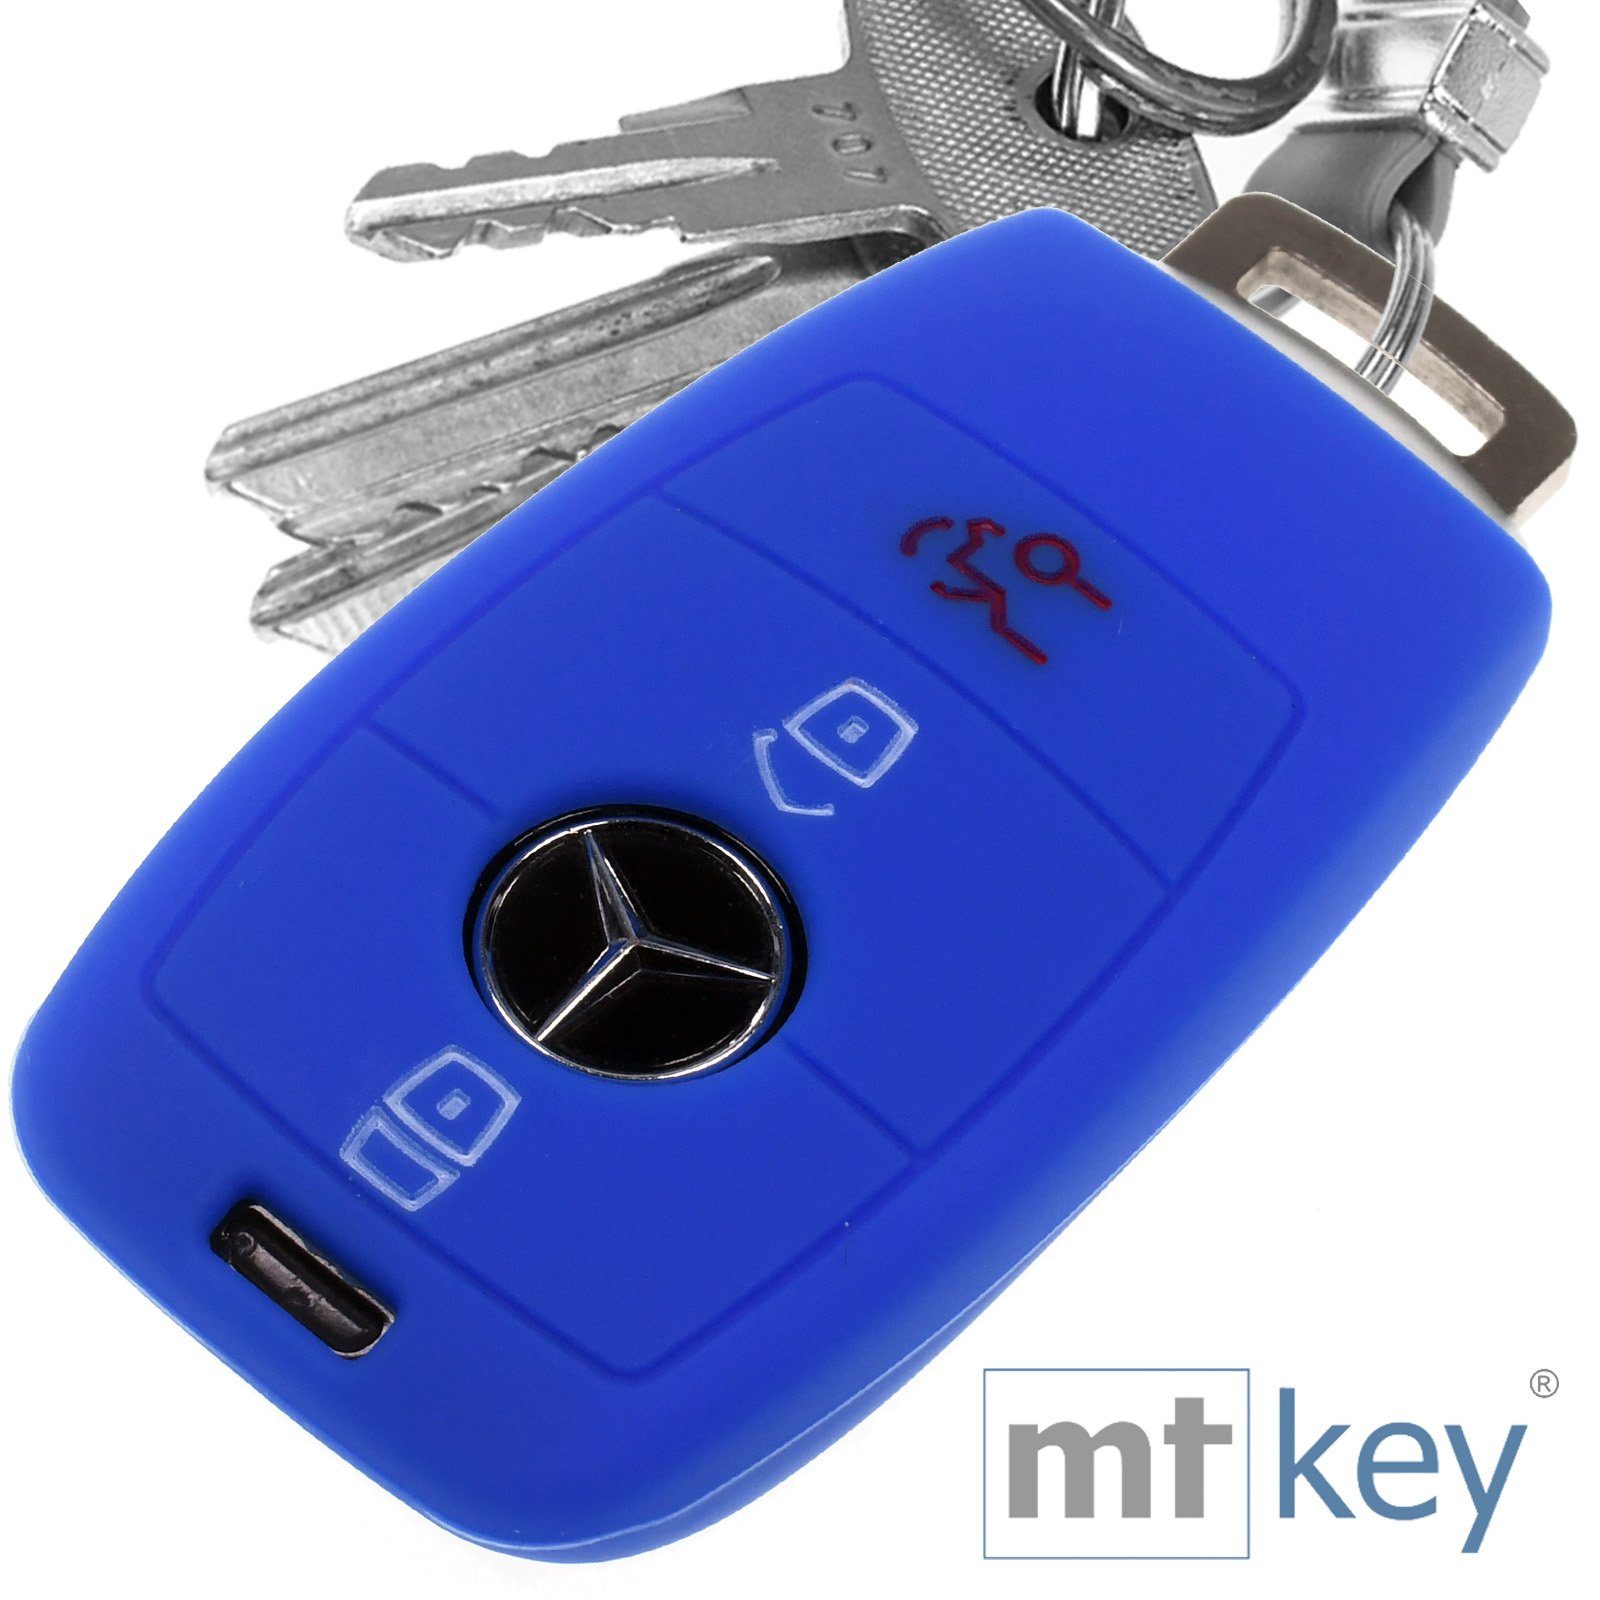 C238 mt-key KEYLESS Mercedes Benz Autoschlüssel Tasten E-Klasse 3 Blau, Softcase W213 A238 Silikon für Schlüsseltasche Schutzhülle S213